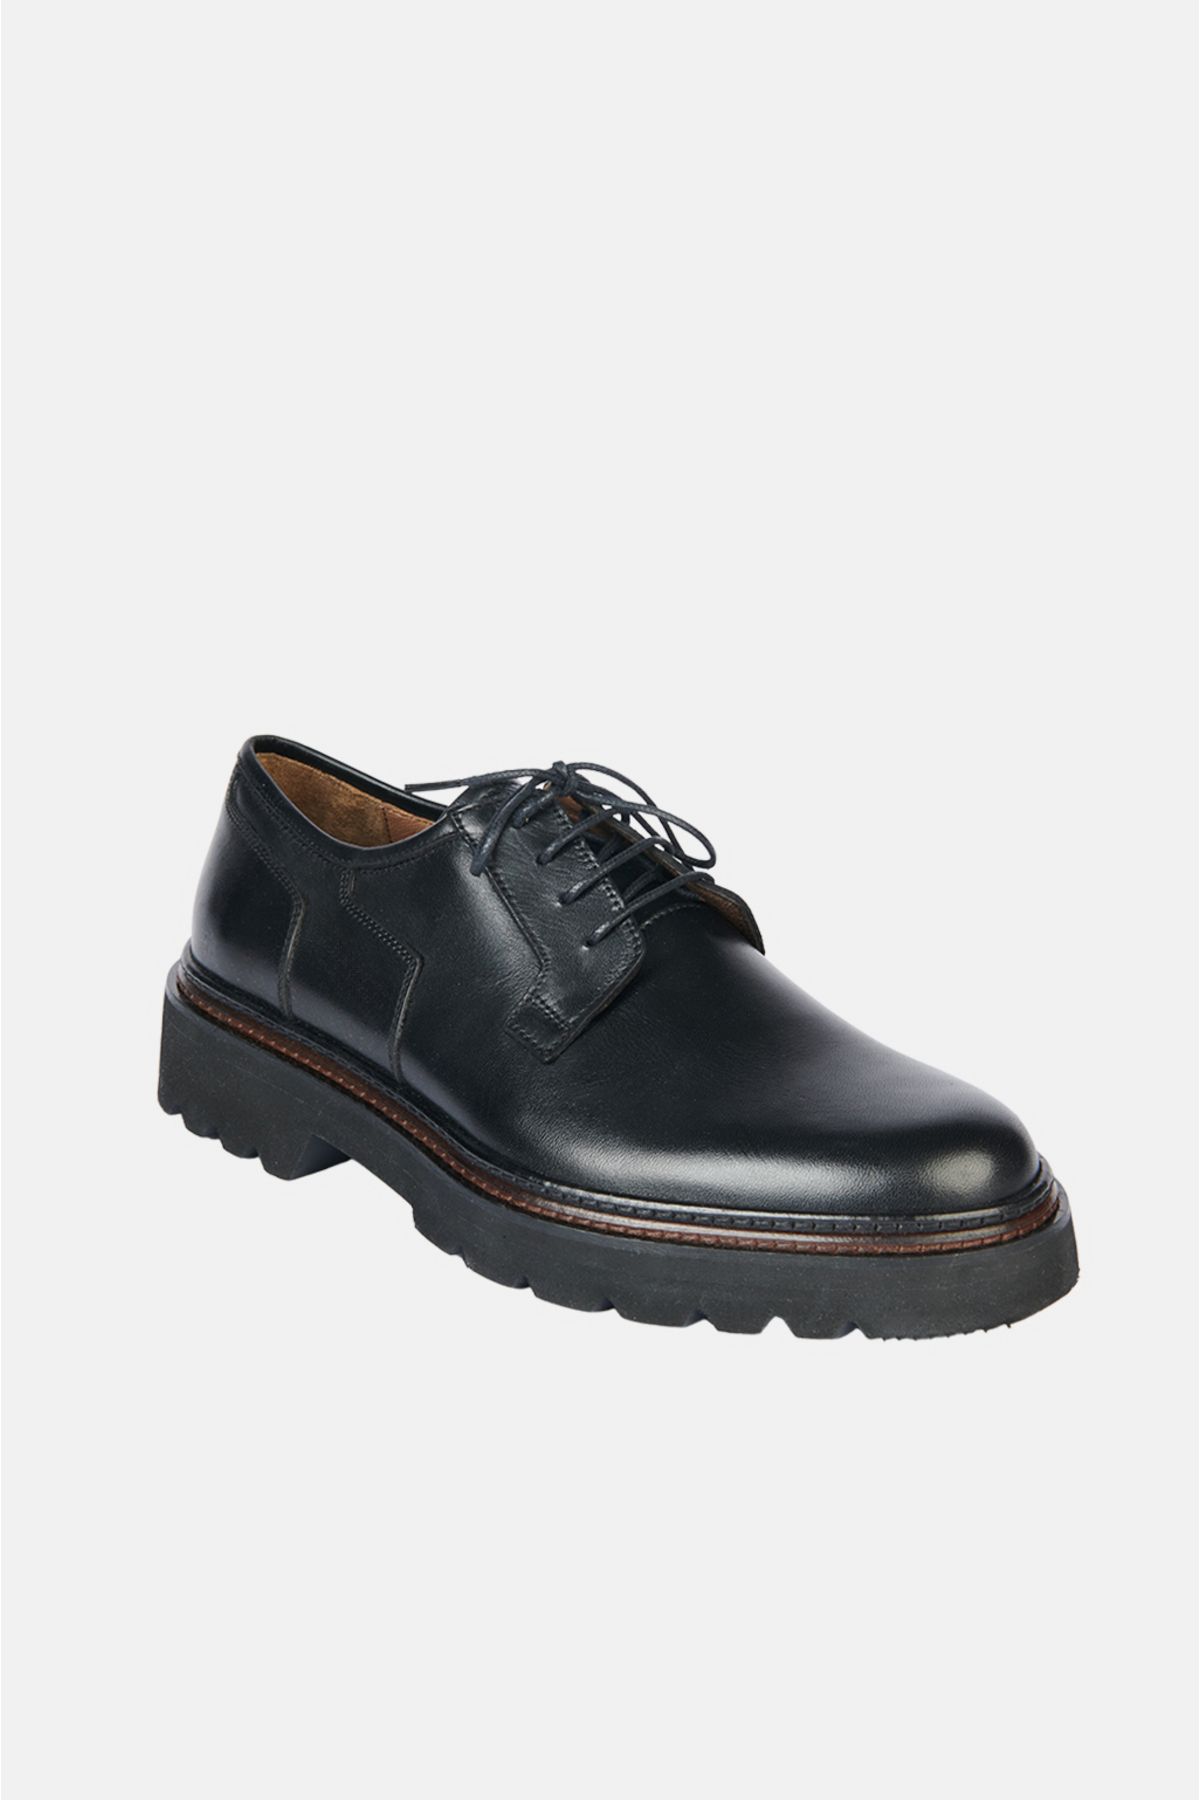 Avva Erkek Siyah %100 Deri Bağcıklı Esnek Taban Klasik Ayakkabı A32y8026